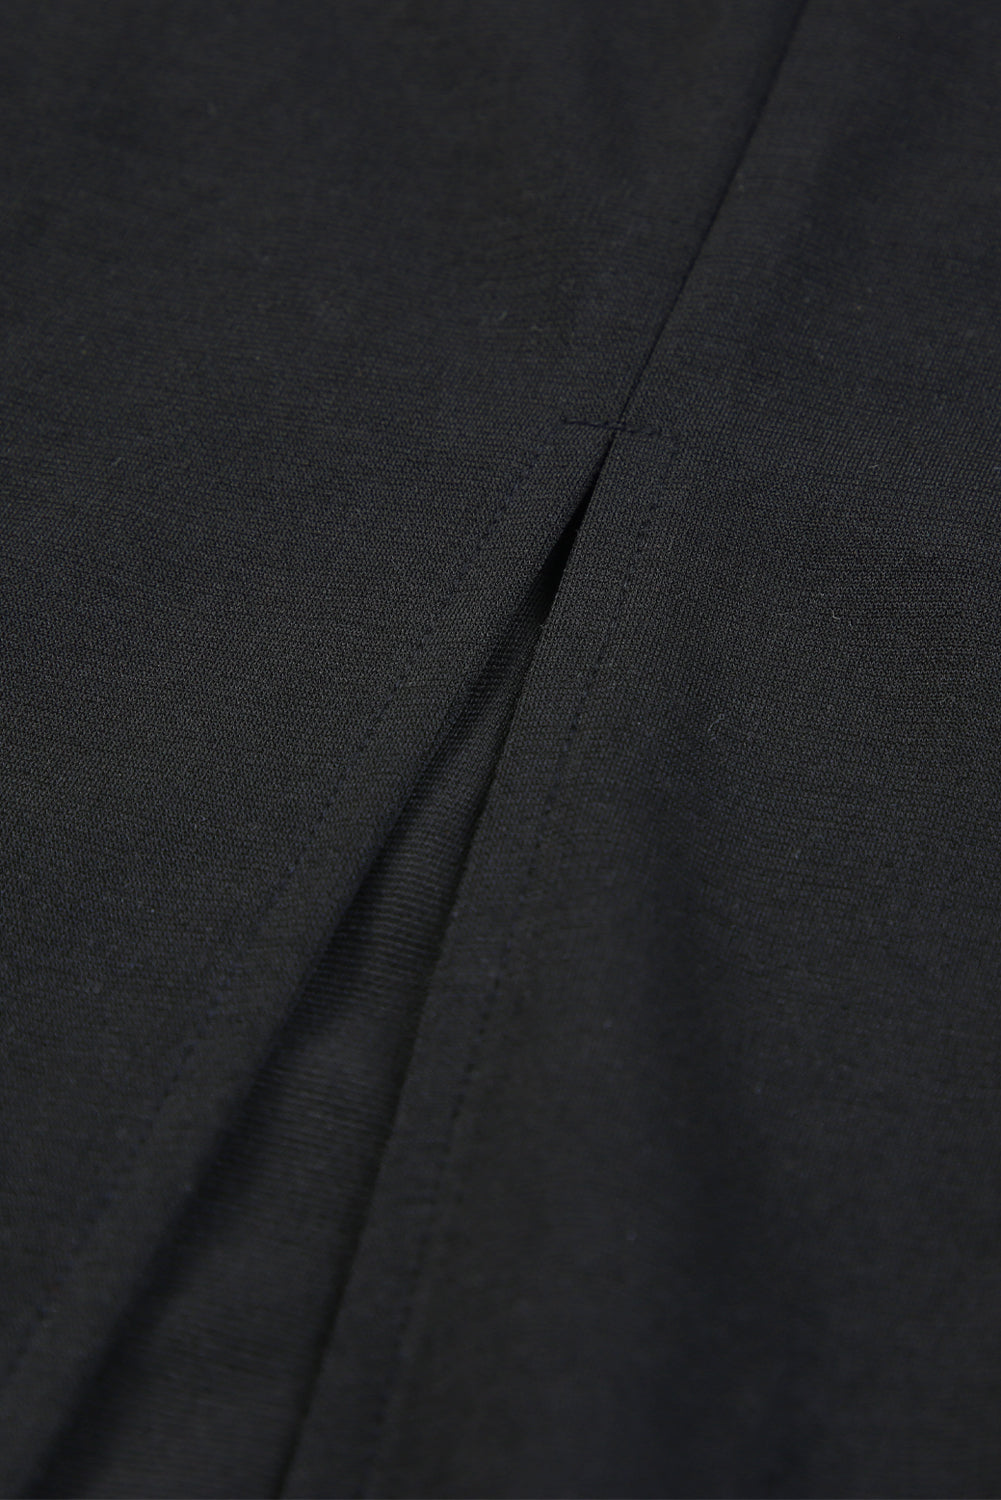 Robe midi moulante noire à bretelles en strass et bordure en plumes avec fente